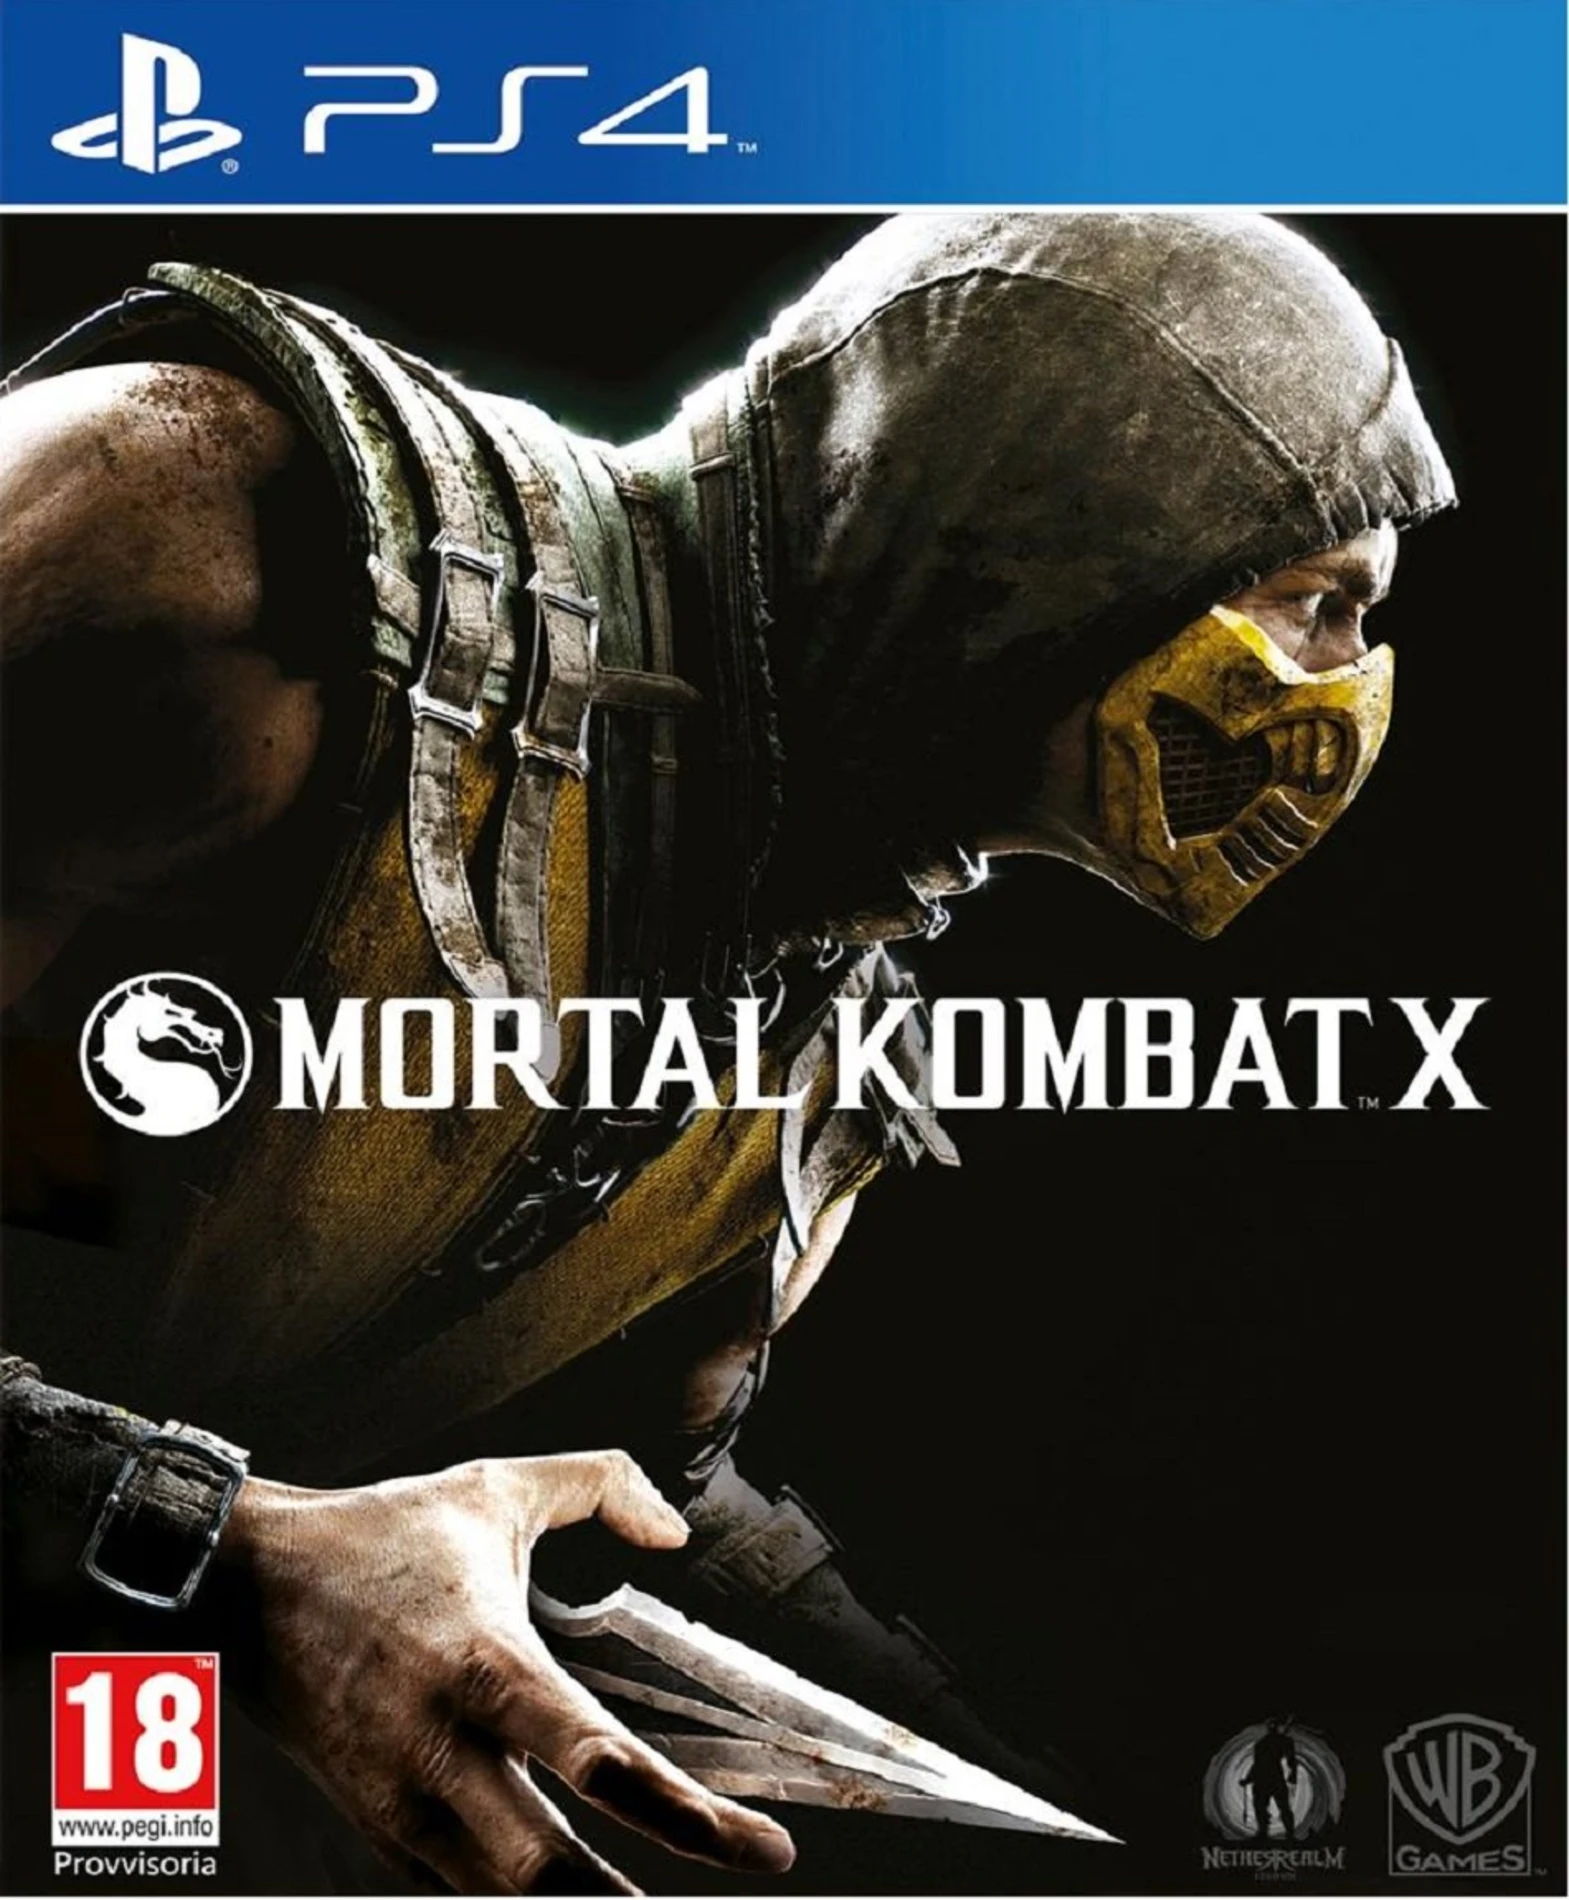 [2.EL] Mortal Kombat X - Ps4 Oyun